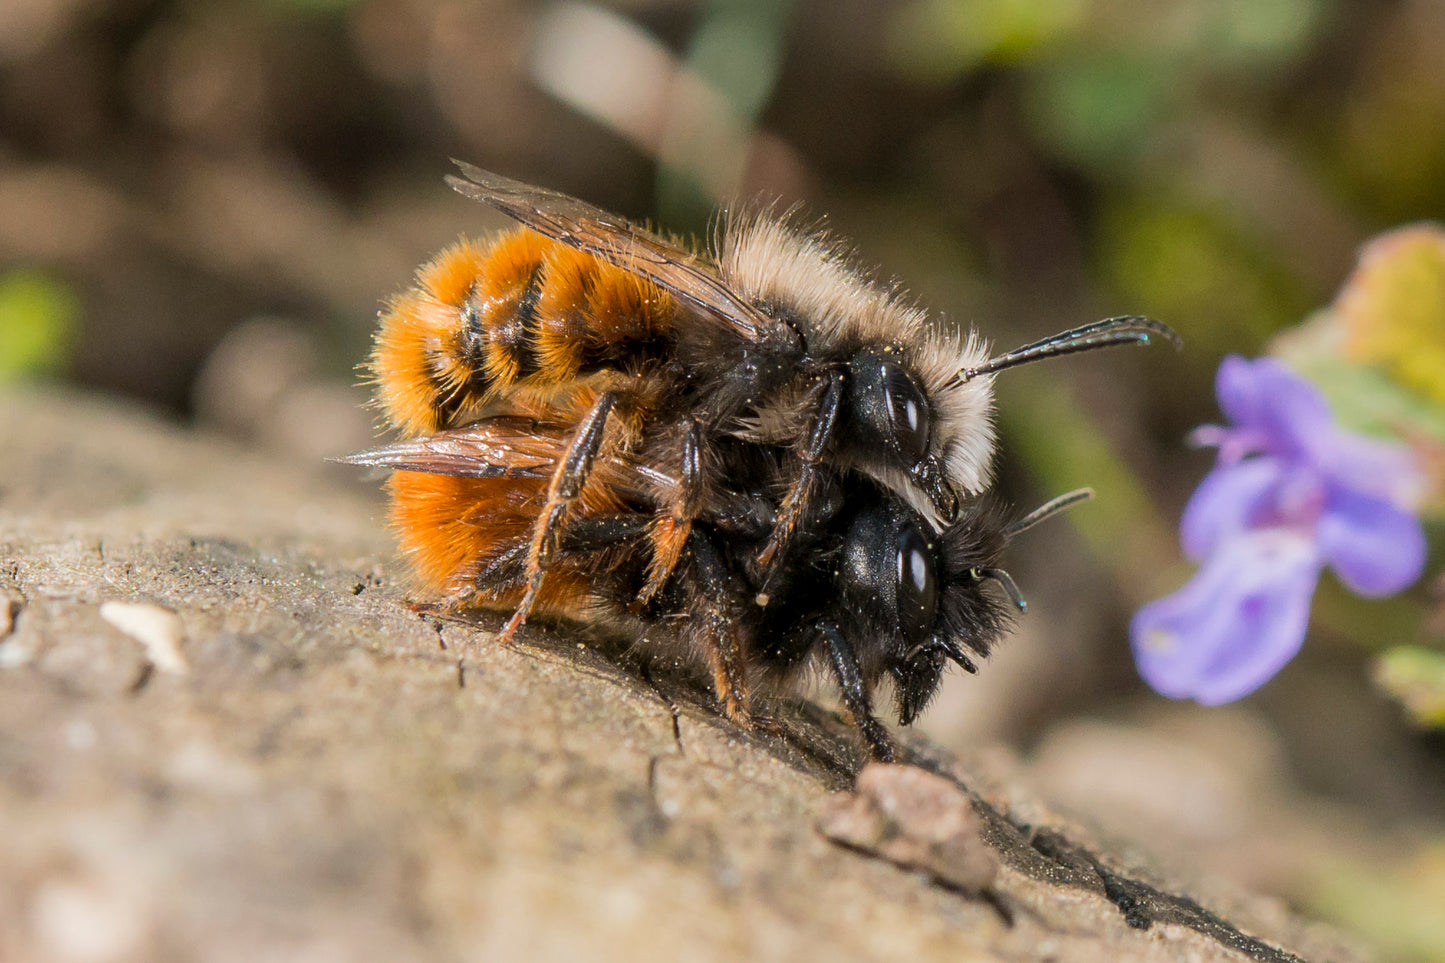 Gehörnte Mauerbienen bei der Paarung. Das Männchen oben umklammert das Weibchen.